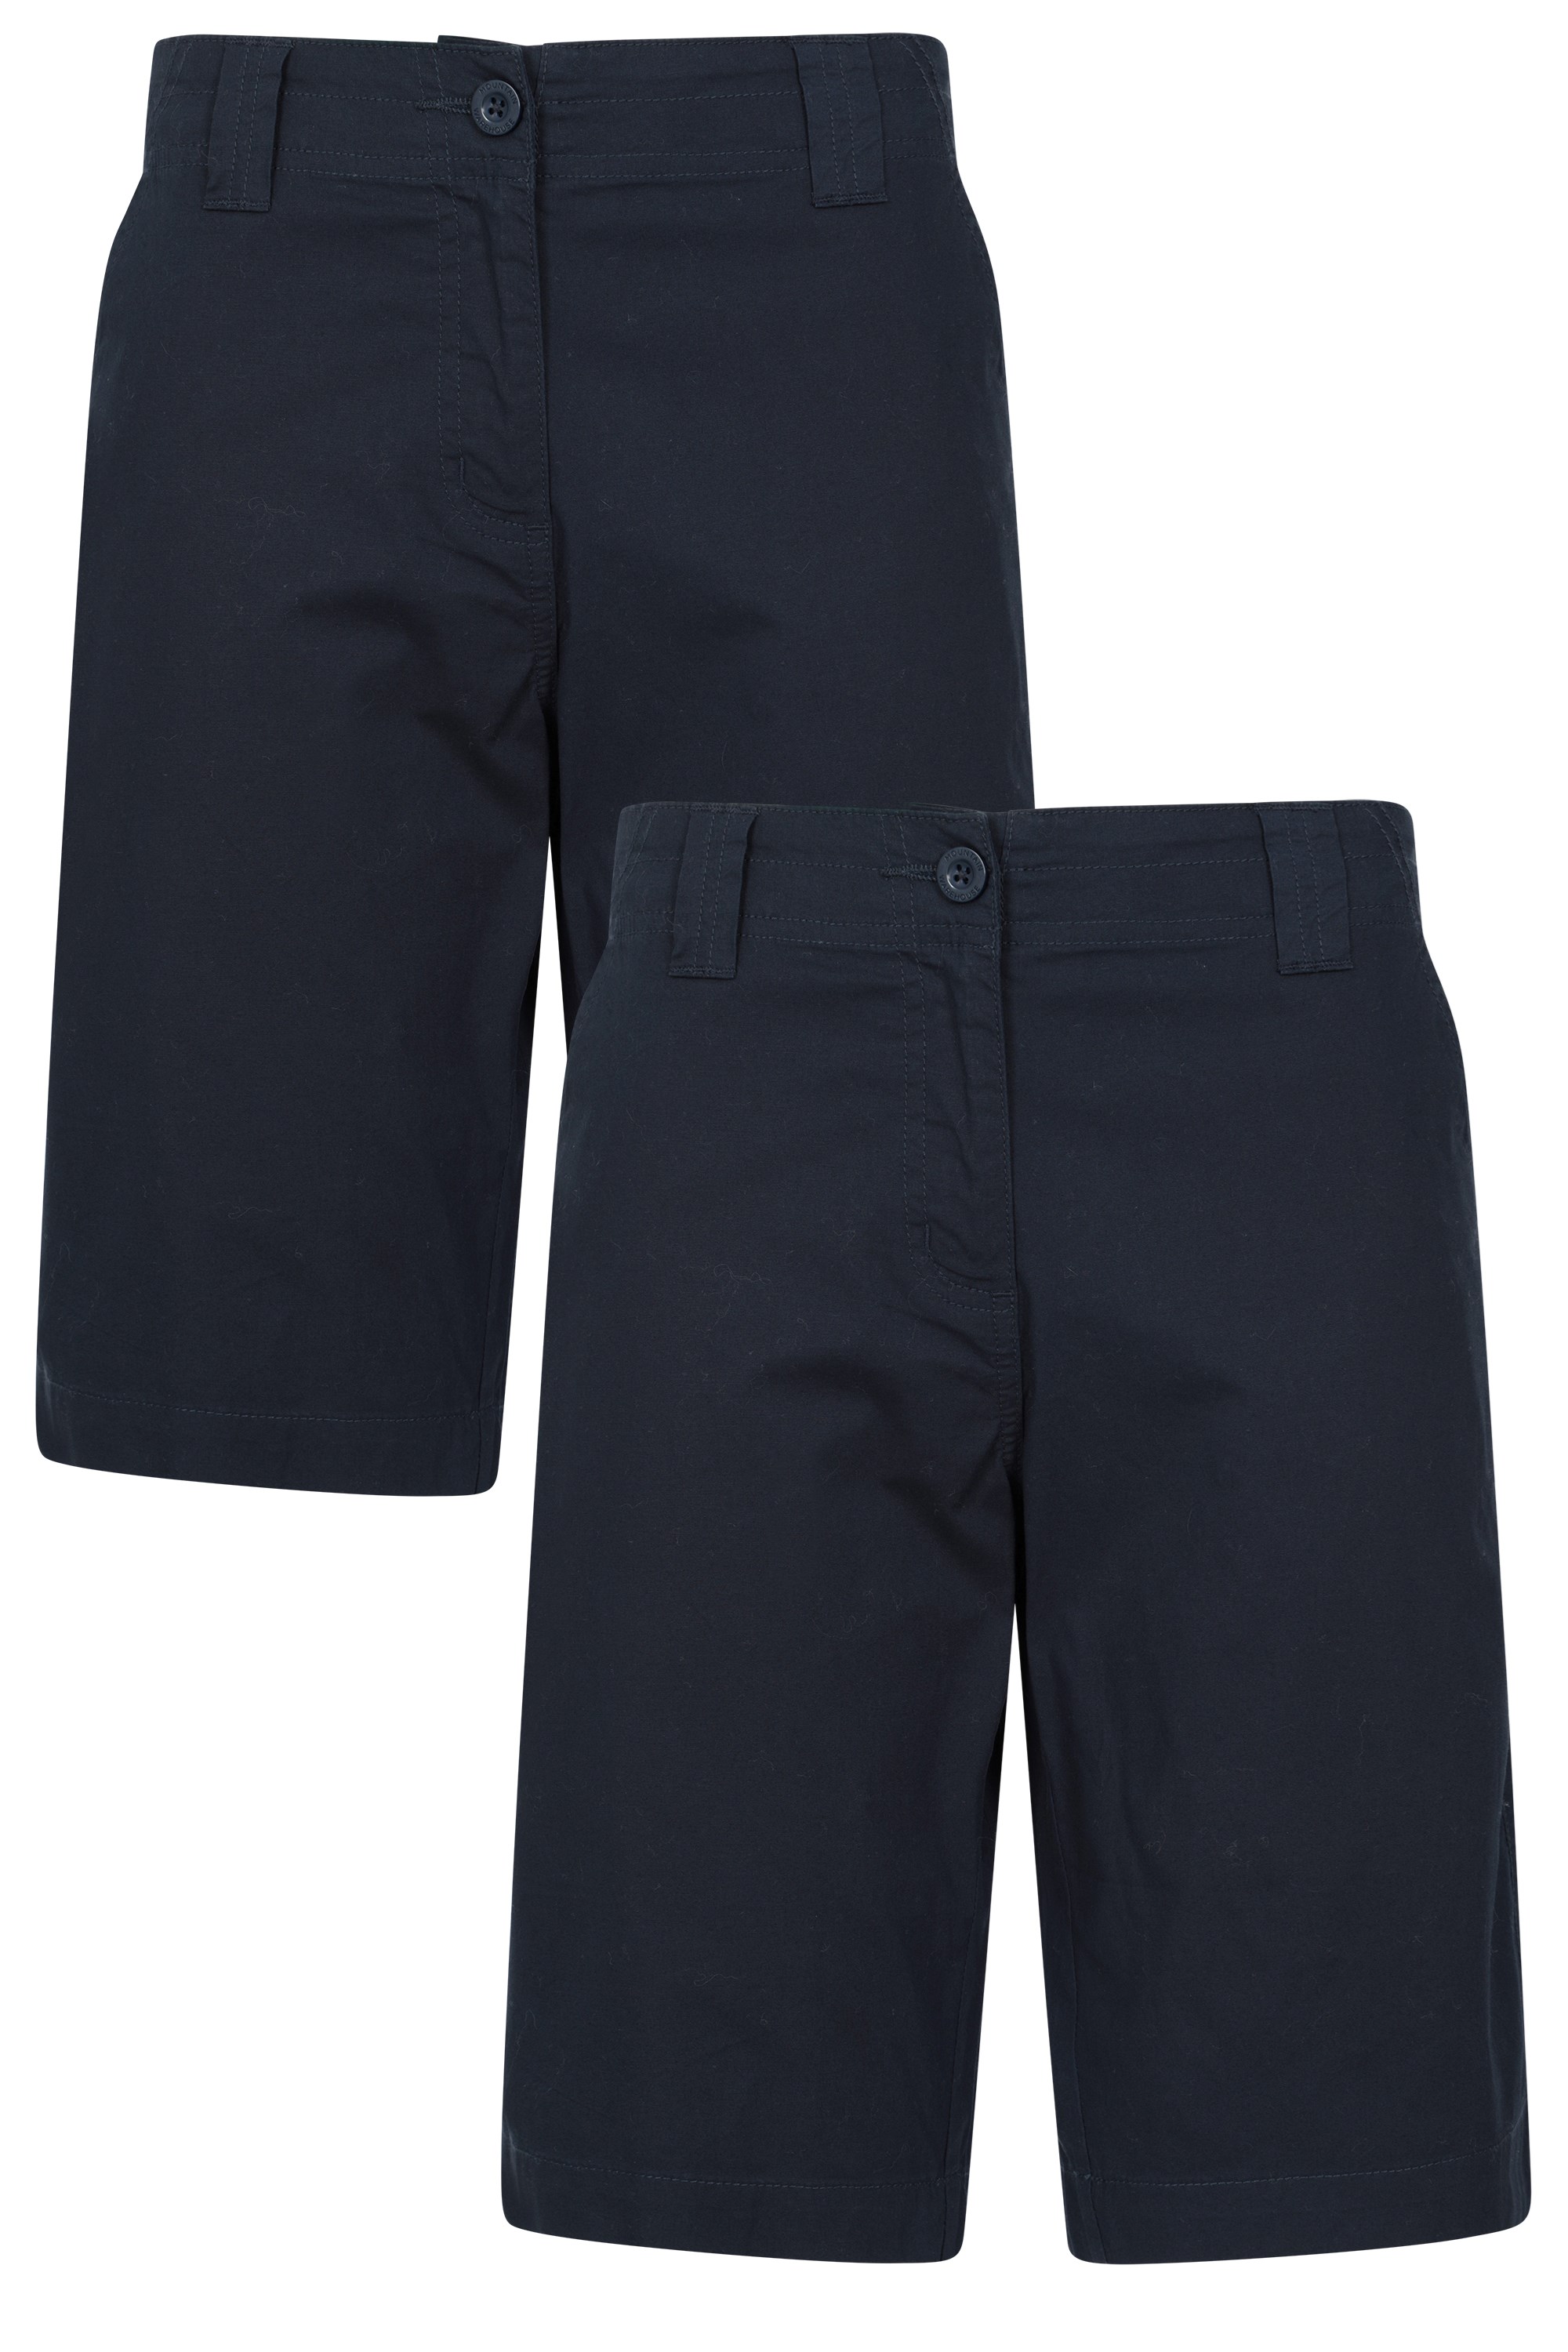 Coast Stretch Multipack - spodnie damskie - 74cm - Navy